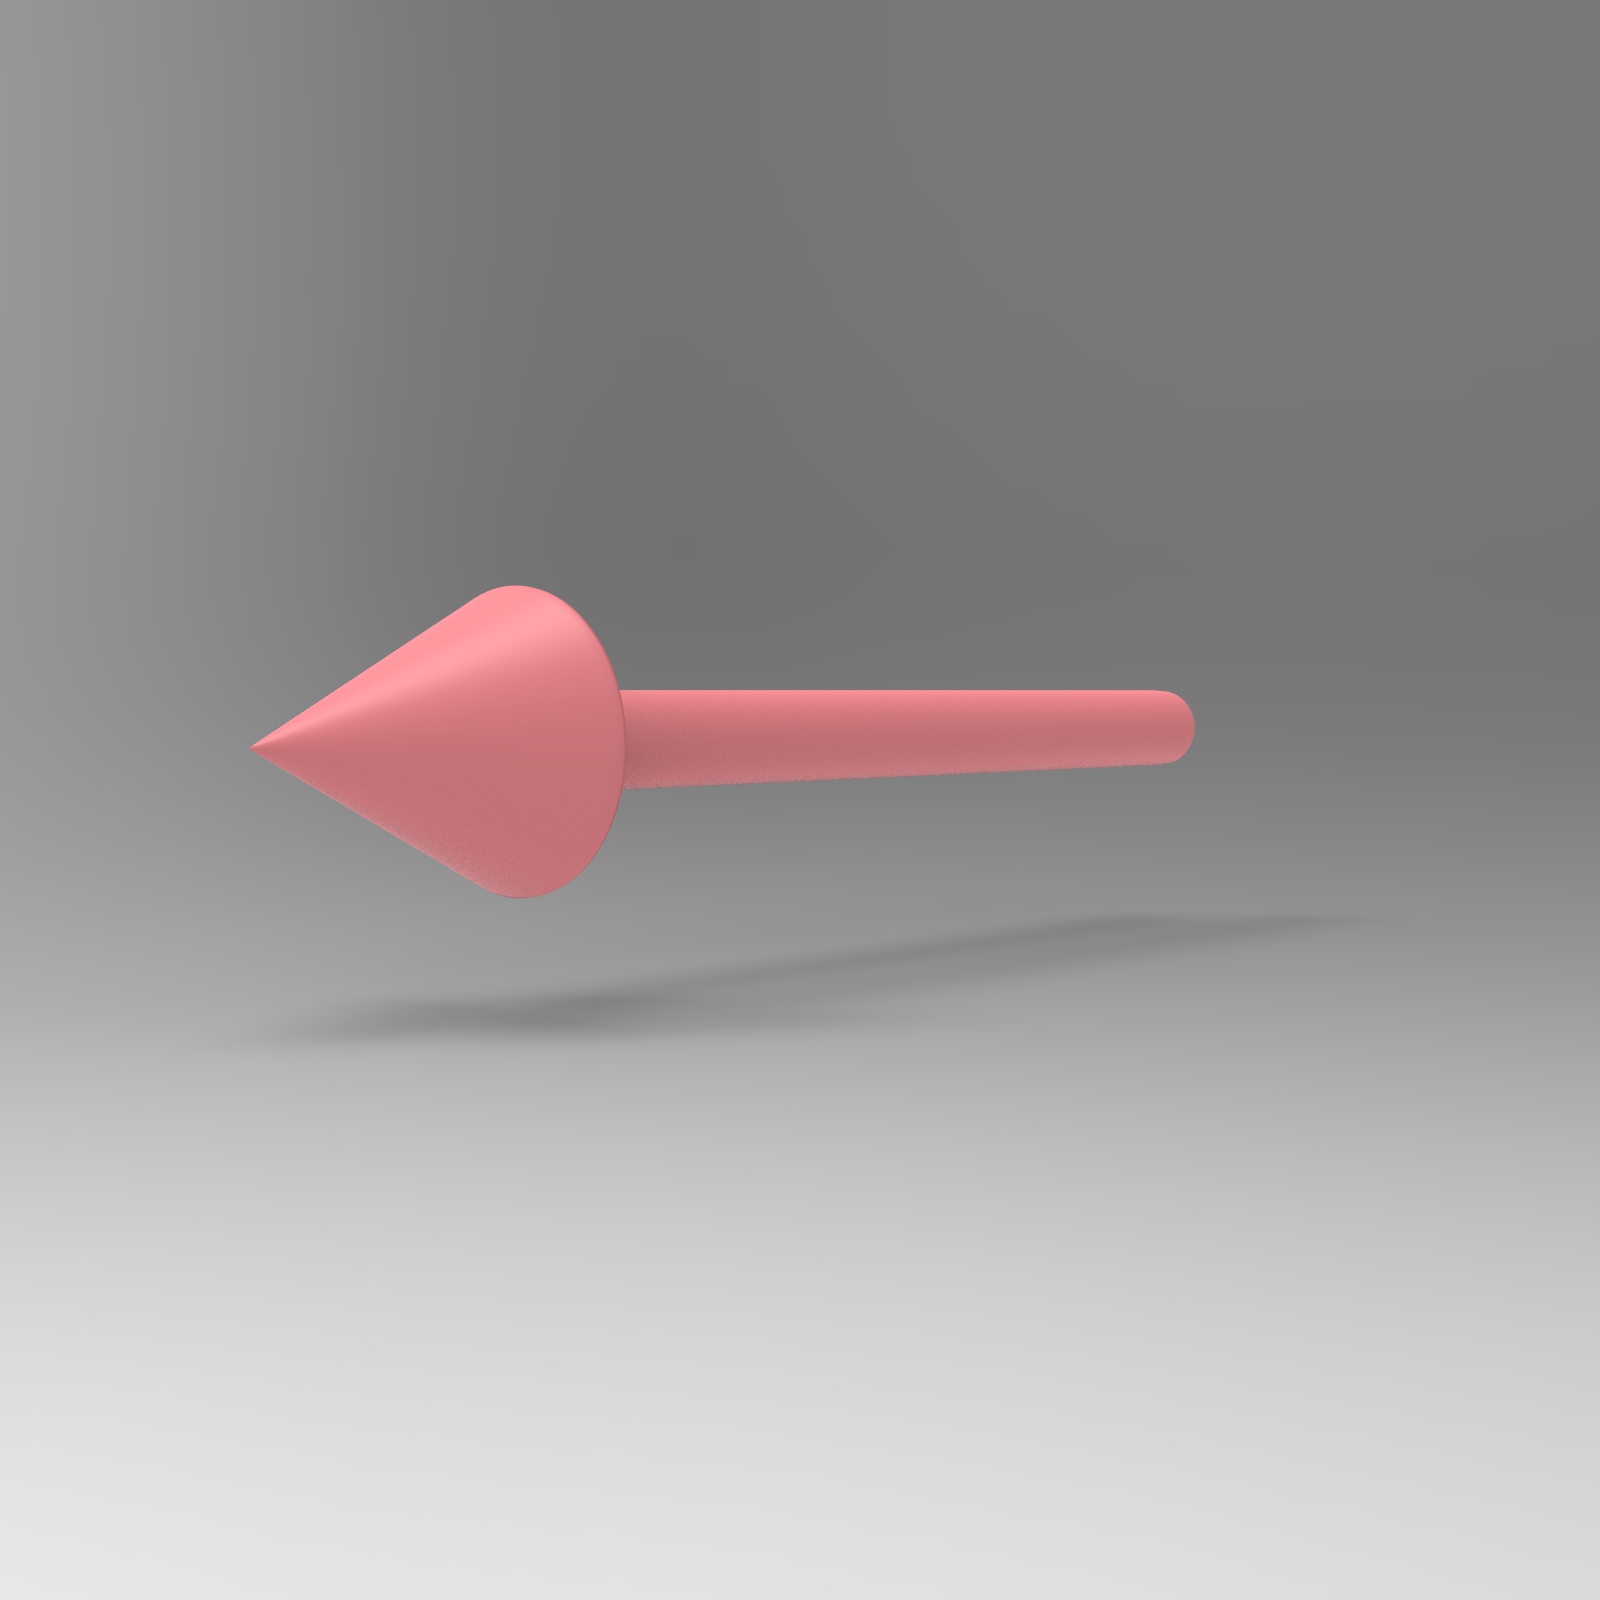 3D箭头系列 - 由后到前的红色箭头 - 素材公社 tooopen.com